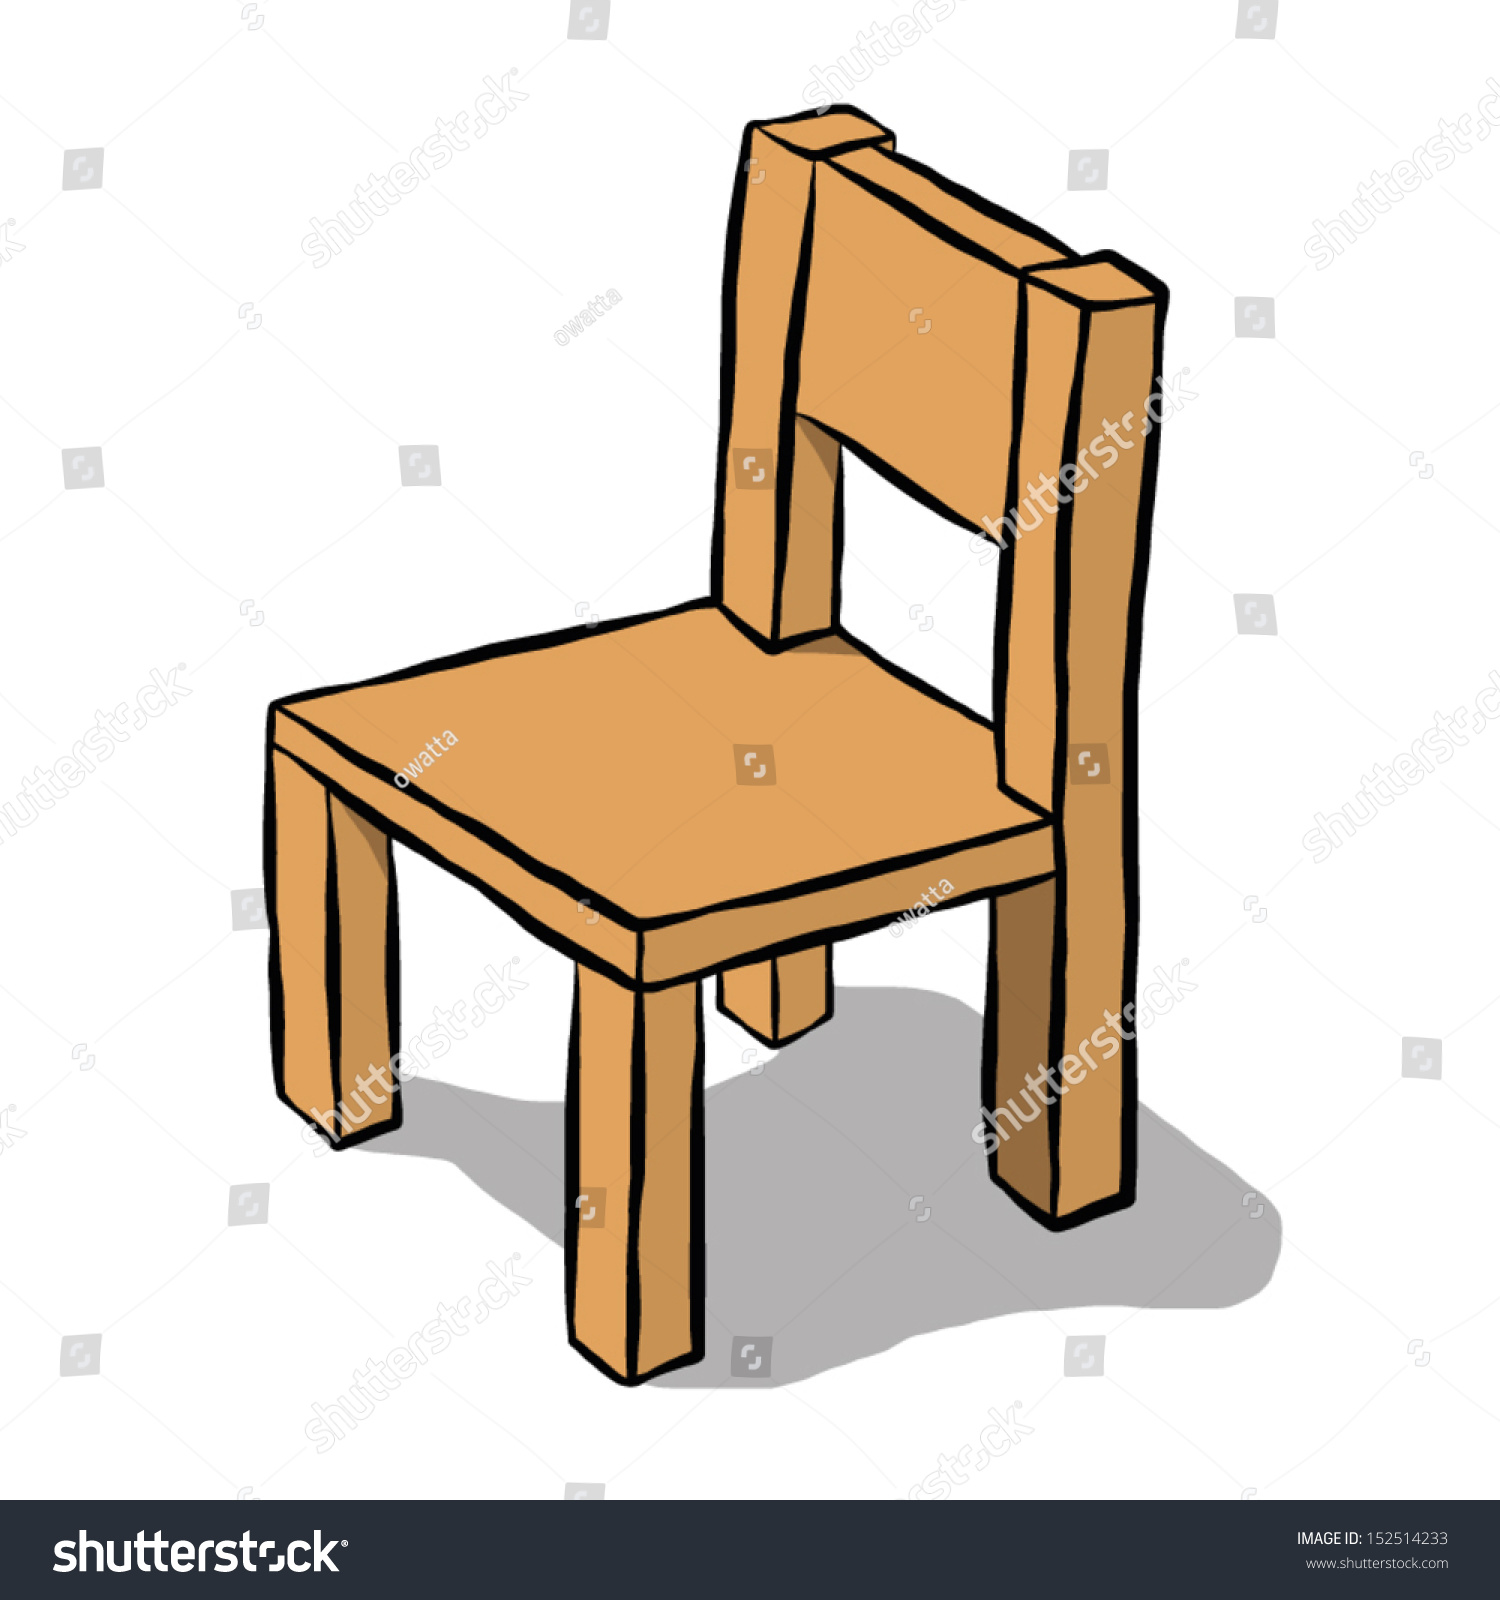 Brown Wooden Chair Cartoon Vector Illustration Vectores En Stock 152514233  Shutterstock